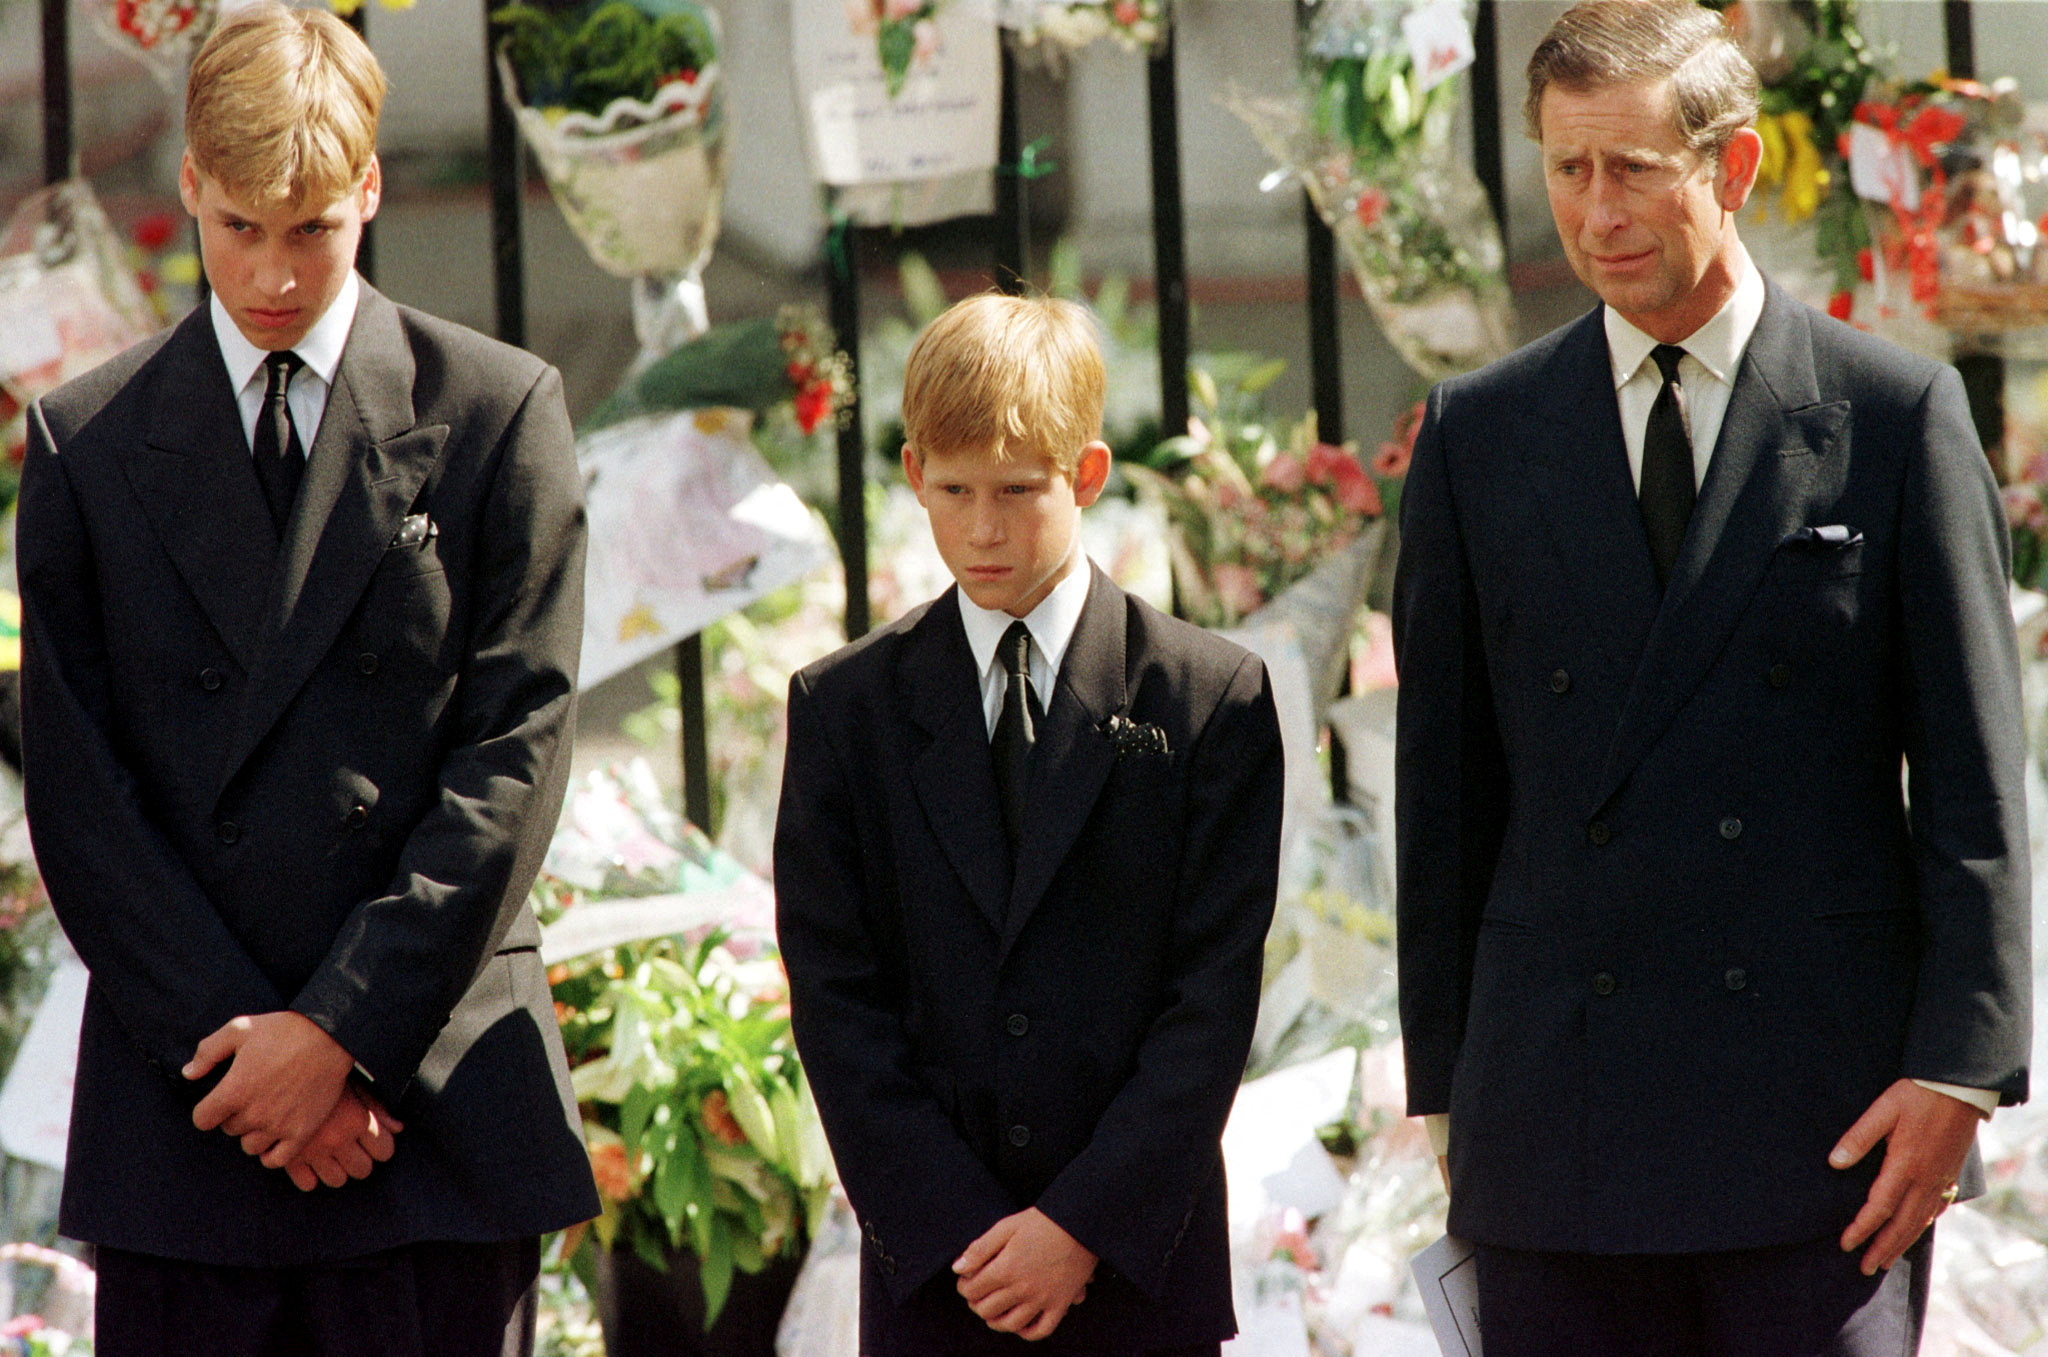 Tras la muerte de Diana, la madre de los príncipes, en un accidente de tráfico en París en 1997, los hermanos conmovieron al mundo cuando caminaron detrás de su féretro en el cortejo fúnebre.